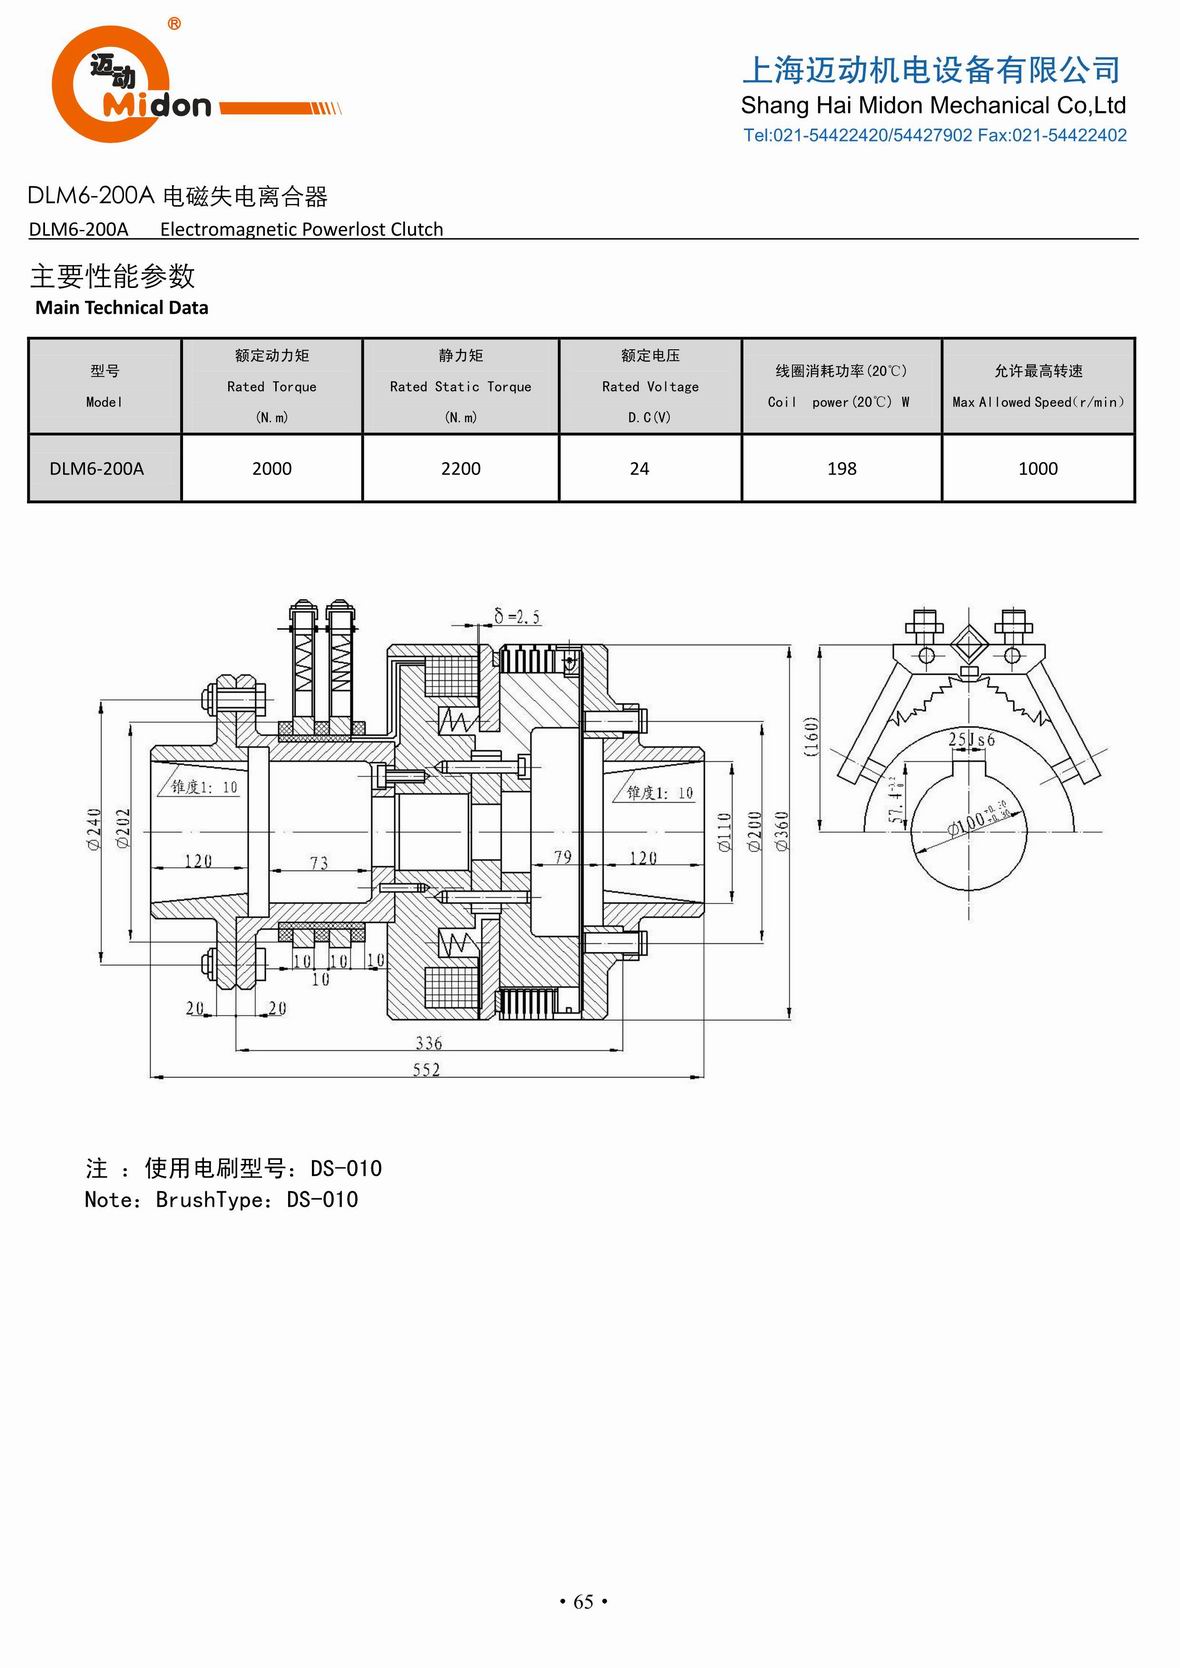 迈动离合器 - DLM6-200A 电磁失电离合器IMG.jpg